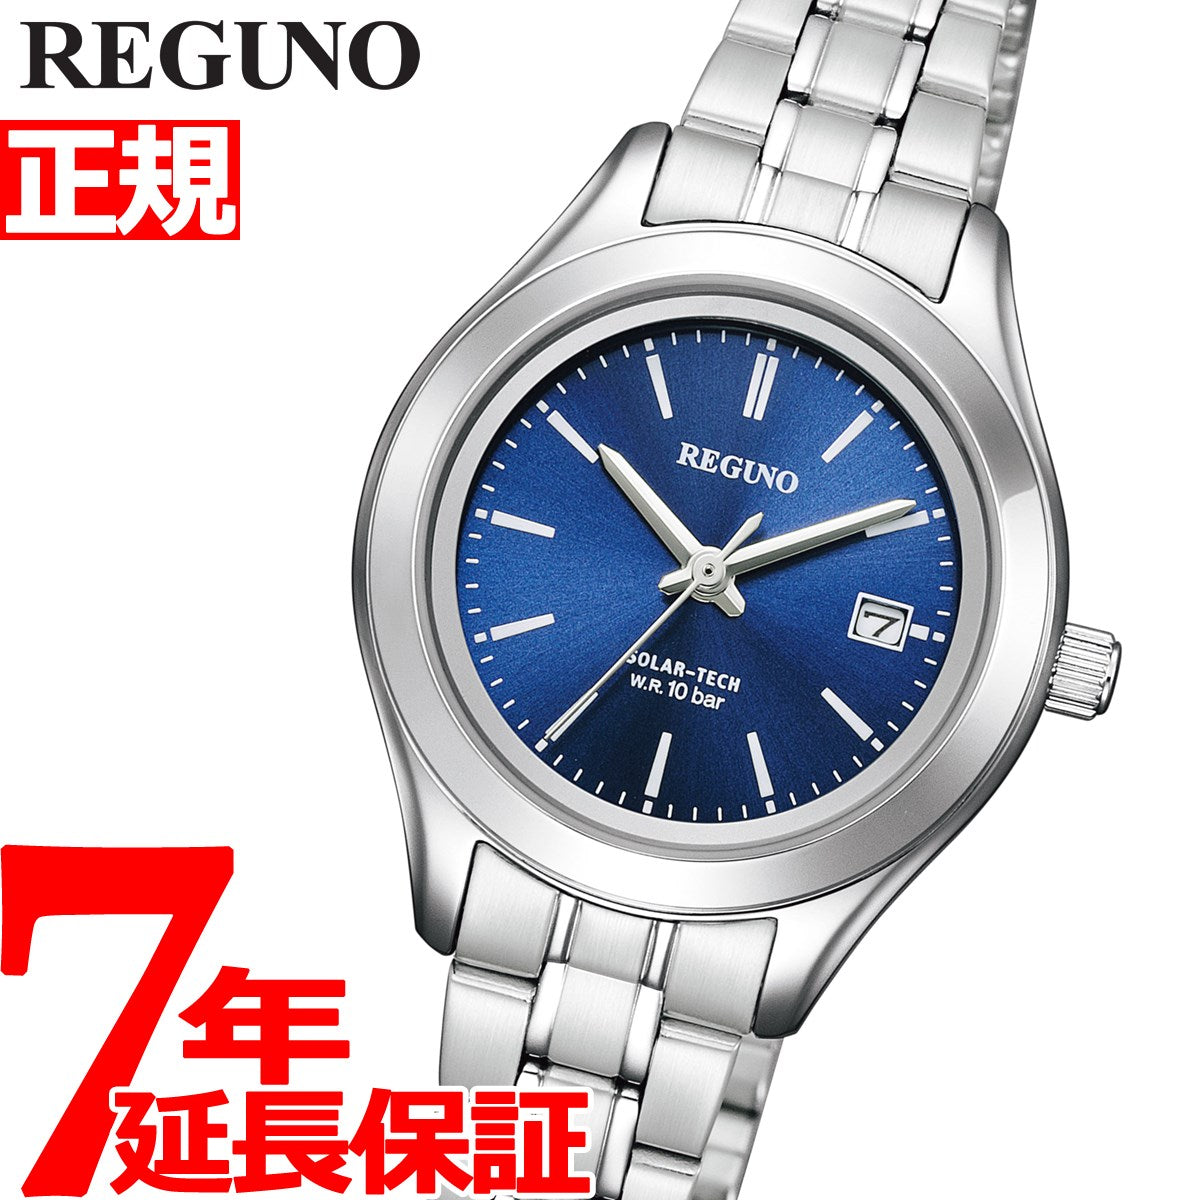 シチズン レグノ レディース 腕時計 ソーラー CITIZEN REGUNO スタンダードシリーズ ブルー シルバー KM4-112-71